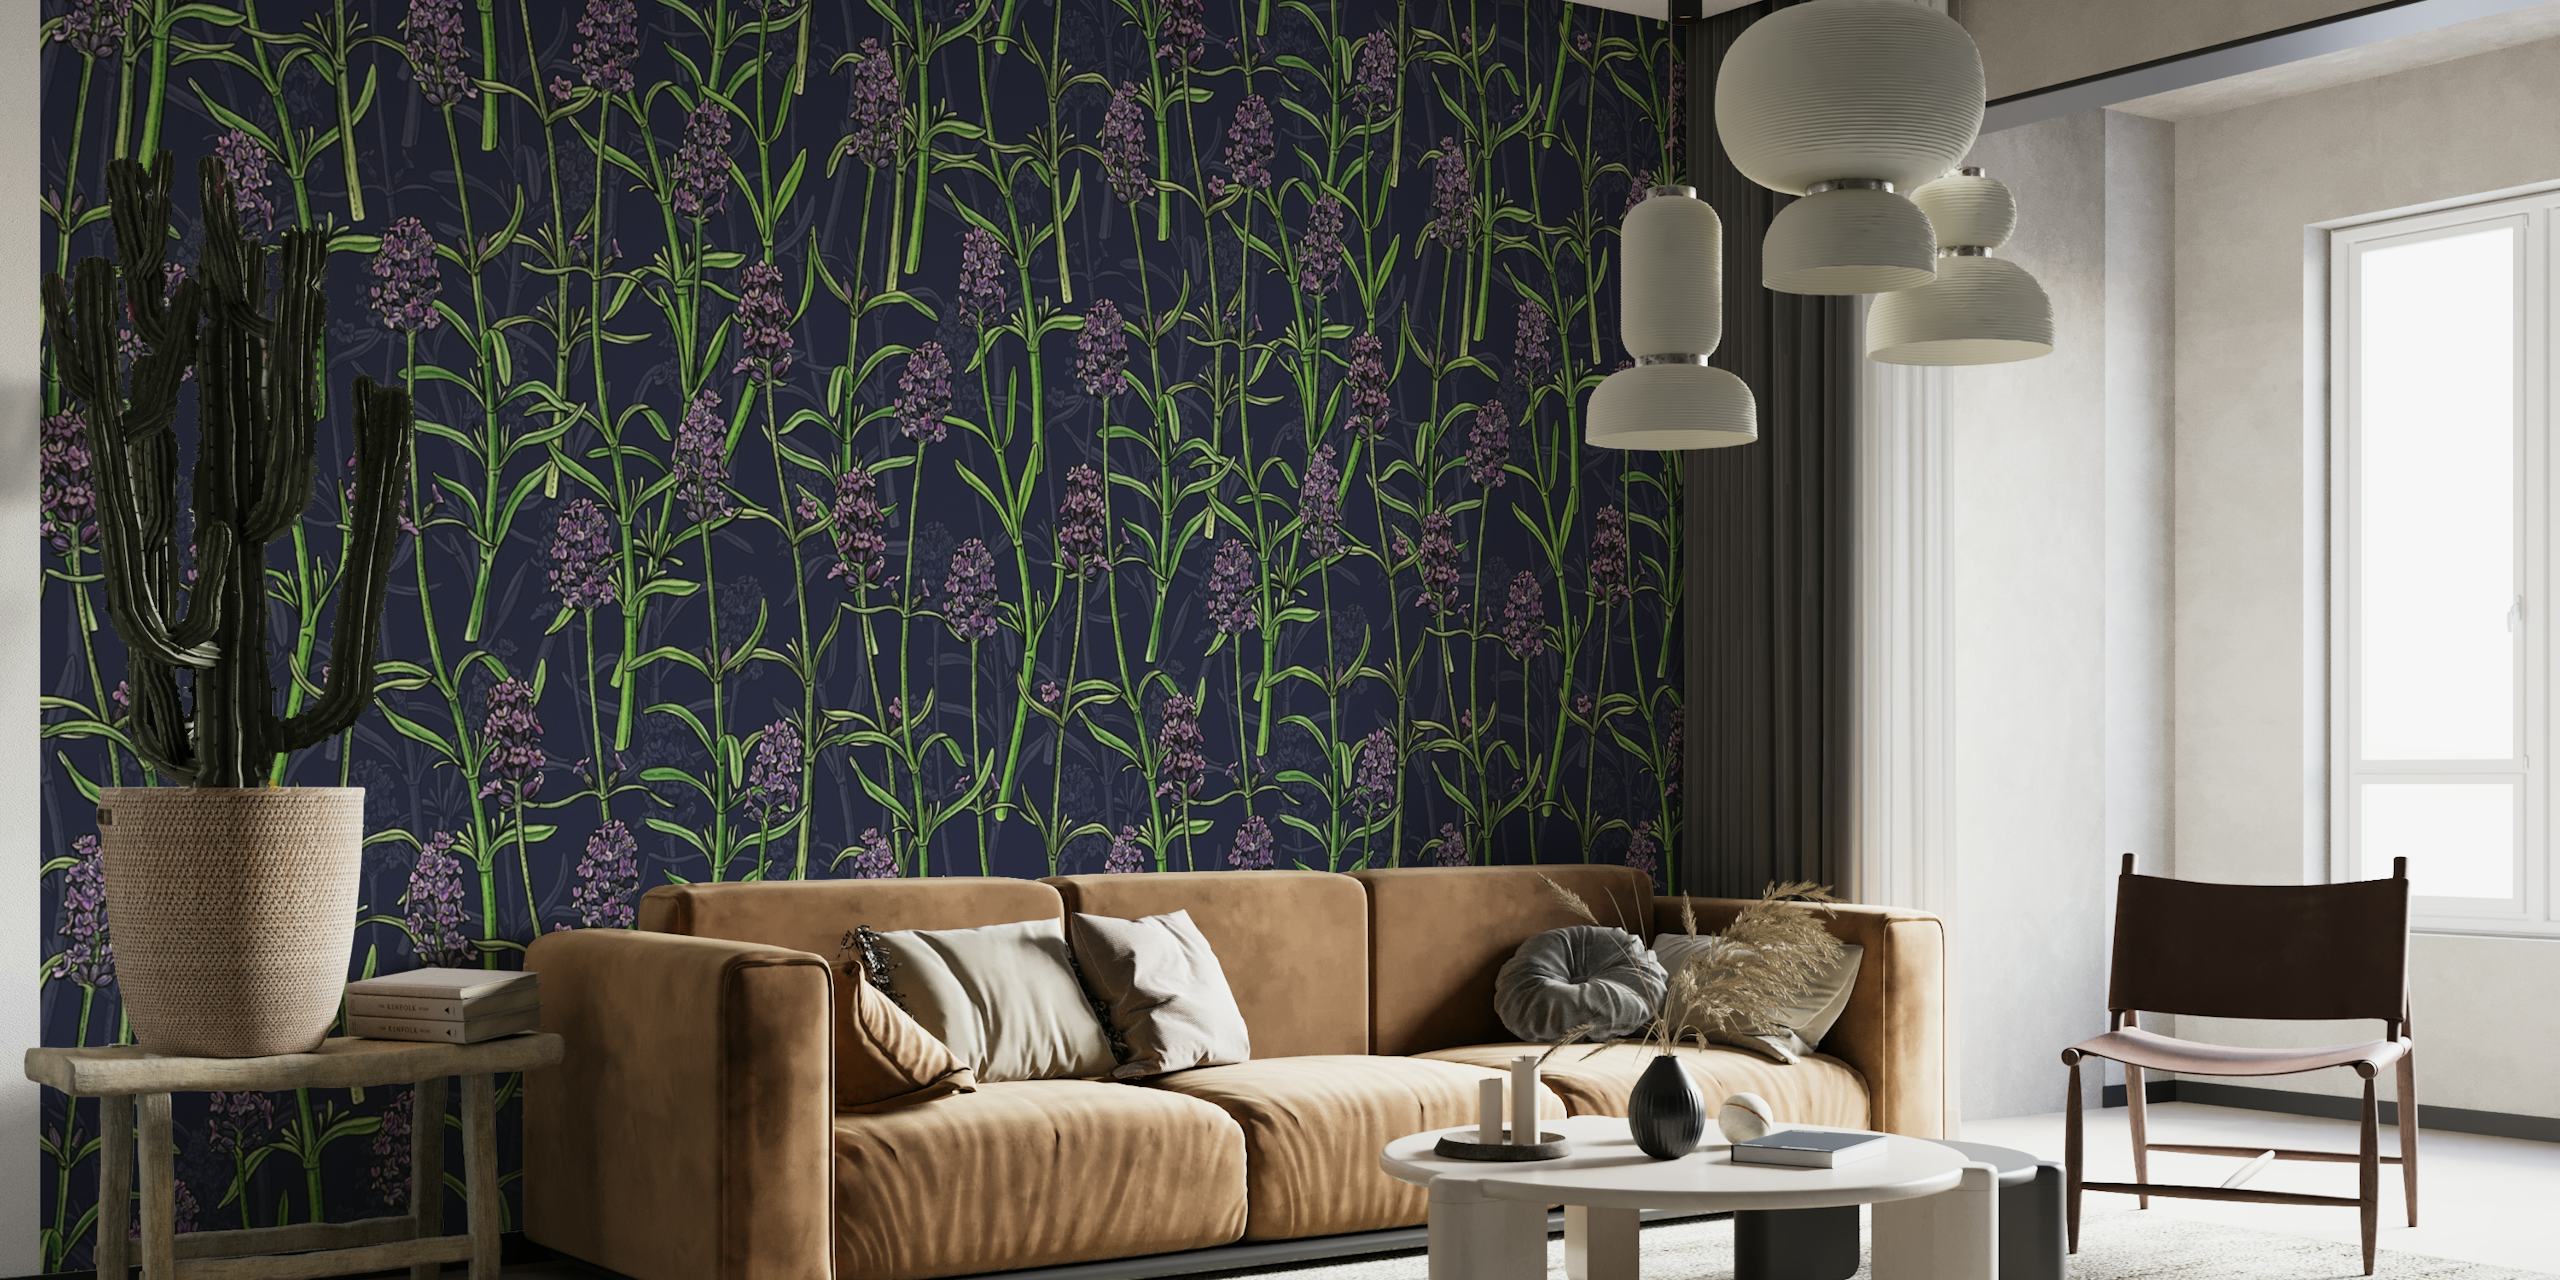 Lavendel vægmaleri med mørk baggrund og grønne accenter